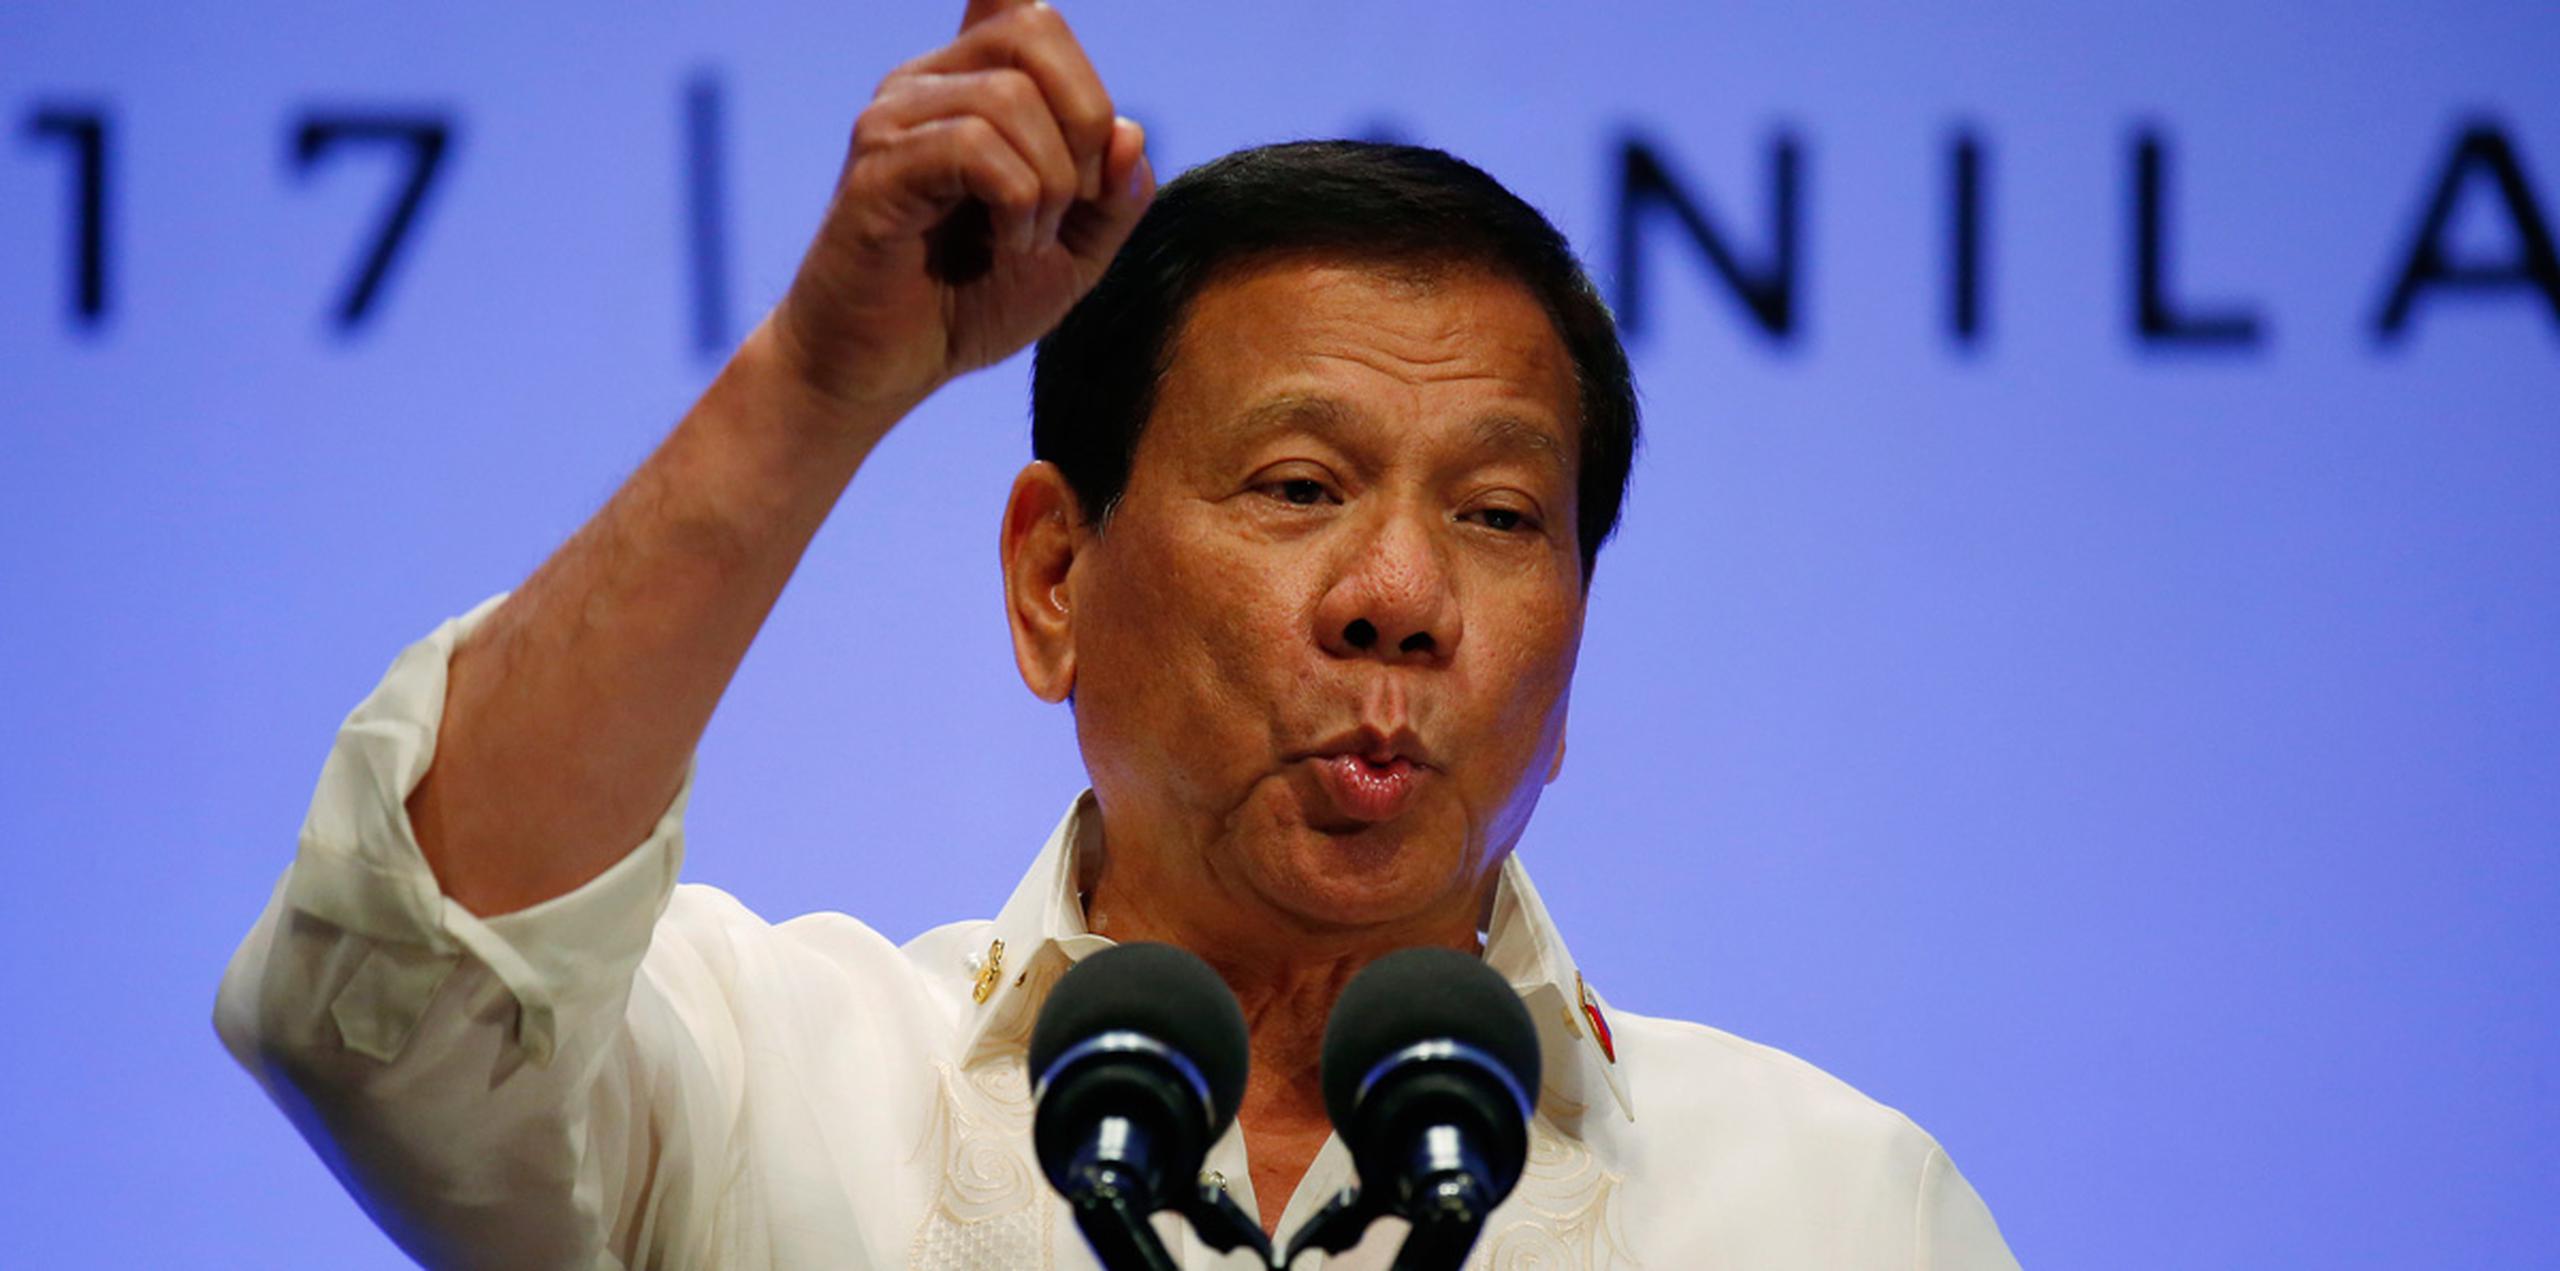 El resultado favorable a Duterte en la votación de hoy no ha sido una sorpresa, ya que de los 292 miembros del Parlamento al menos 267 son considerados aliados suyos, y el mandatario sigue gozando de un amplio apoyo popular entre los filipinos.  (EFE)